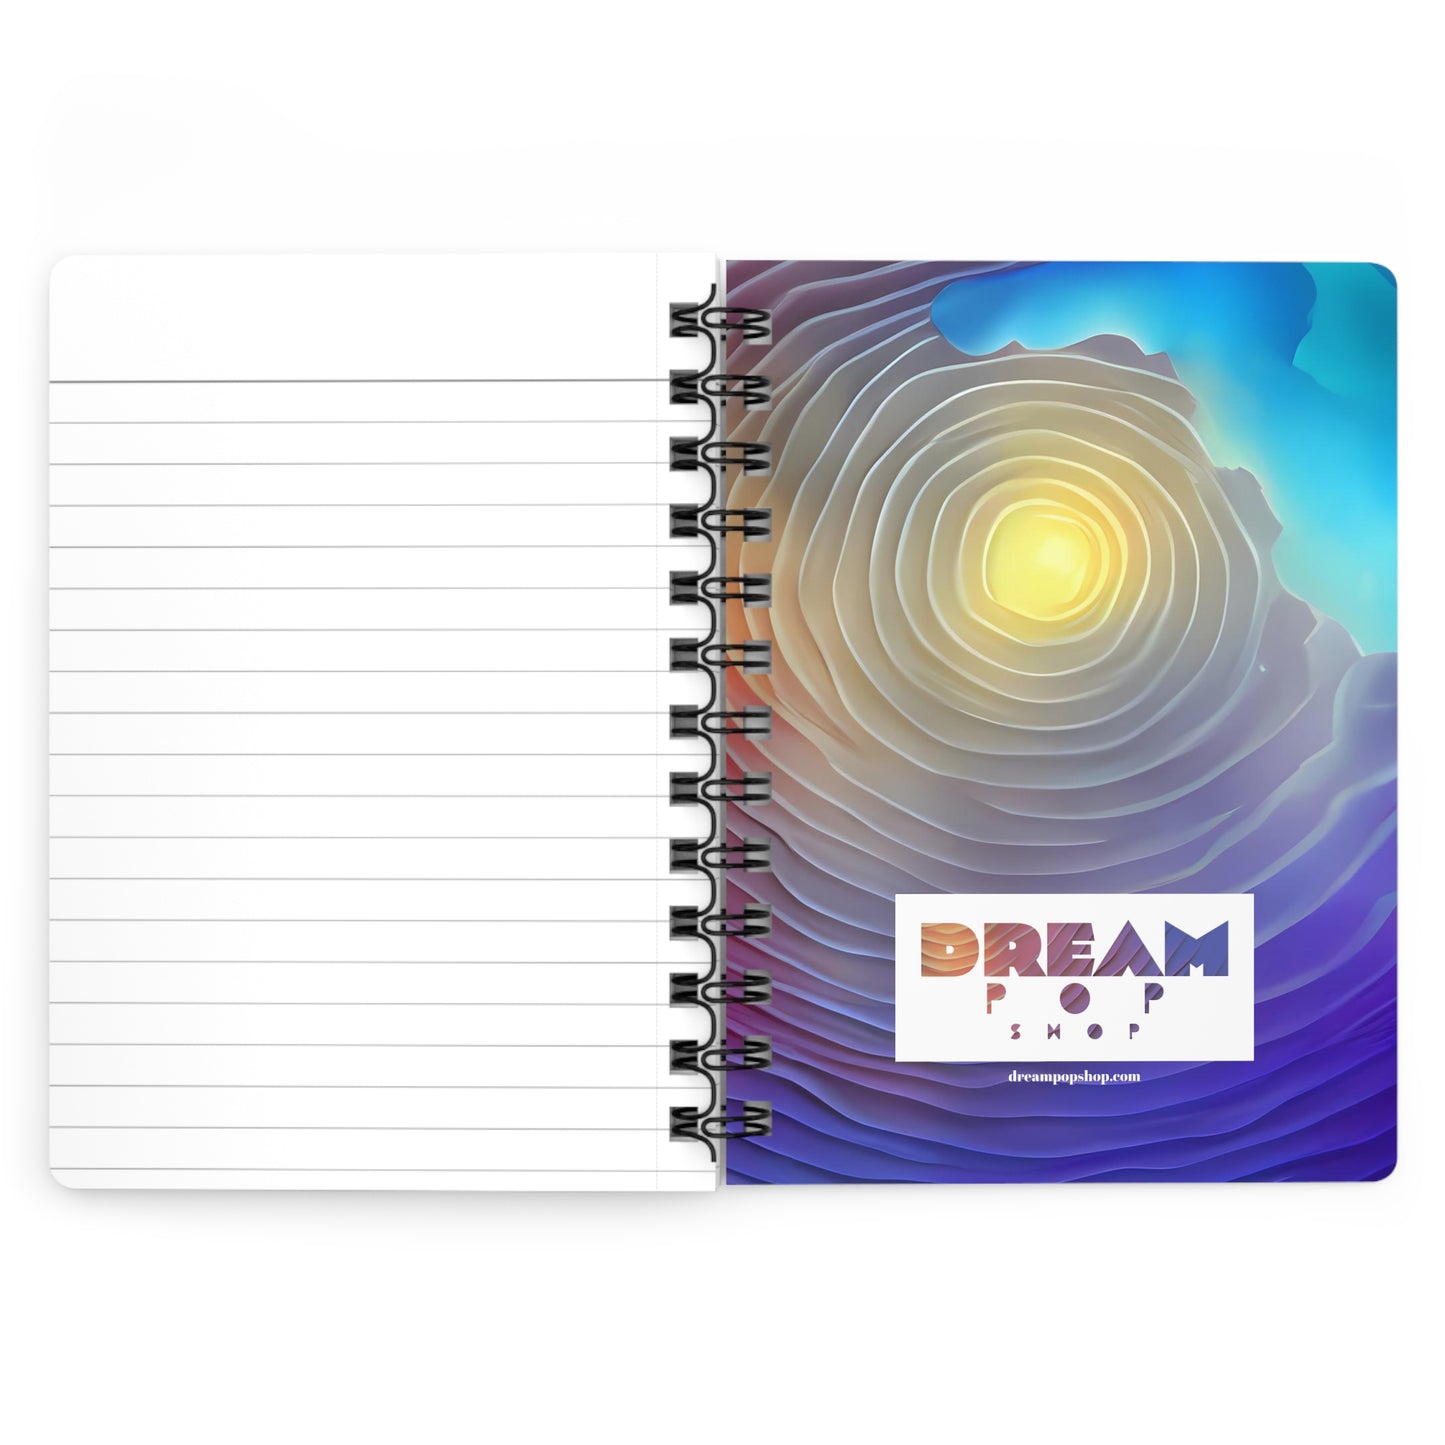 Dream Pop Shop Spiral Bound Journal